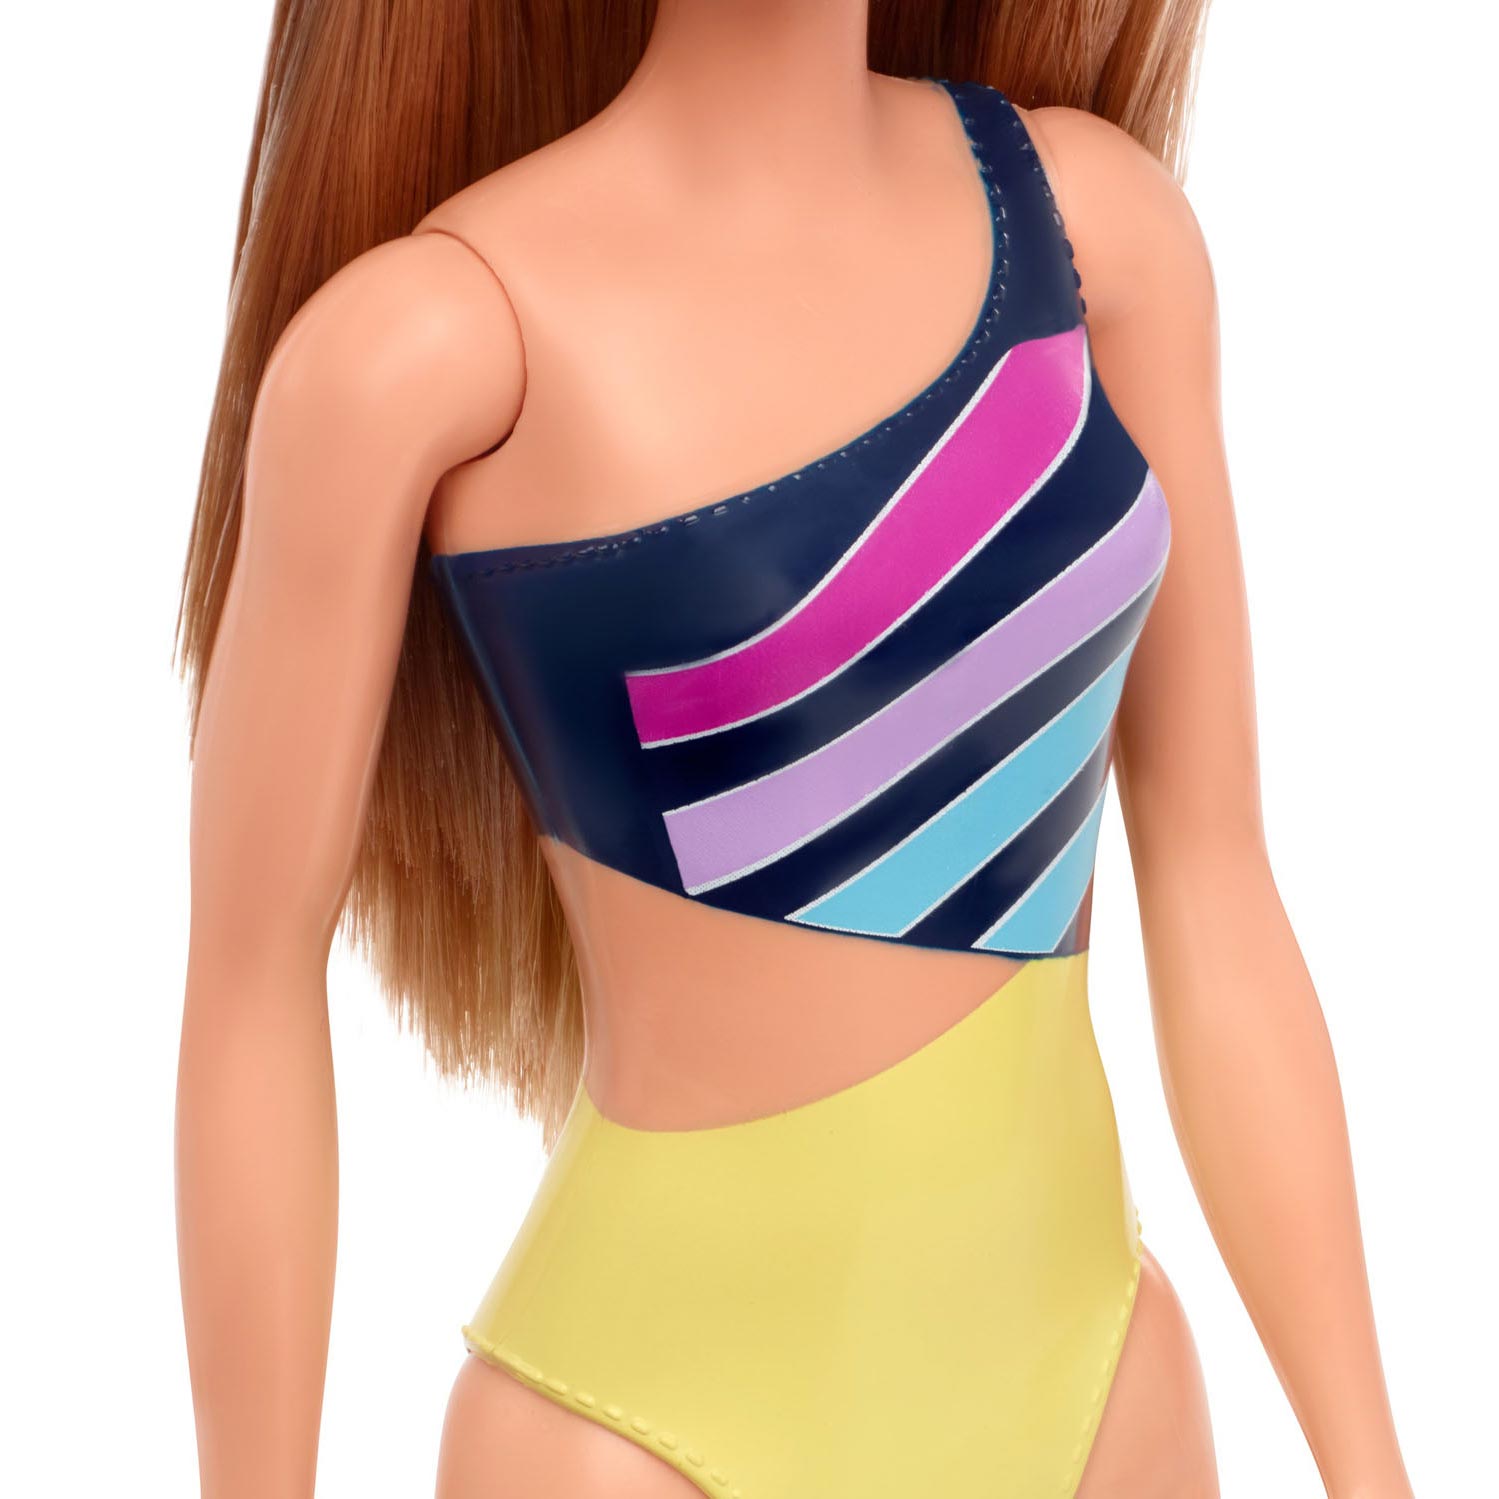 Barbie-Puppe Strandpuppe – Blondes Haar mit Badeanzug